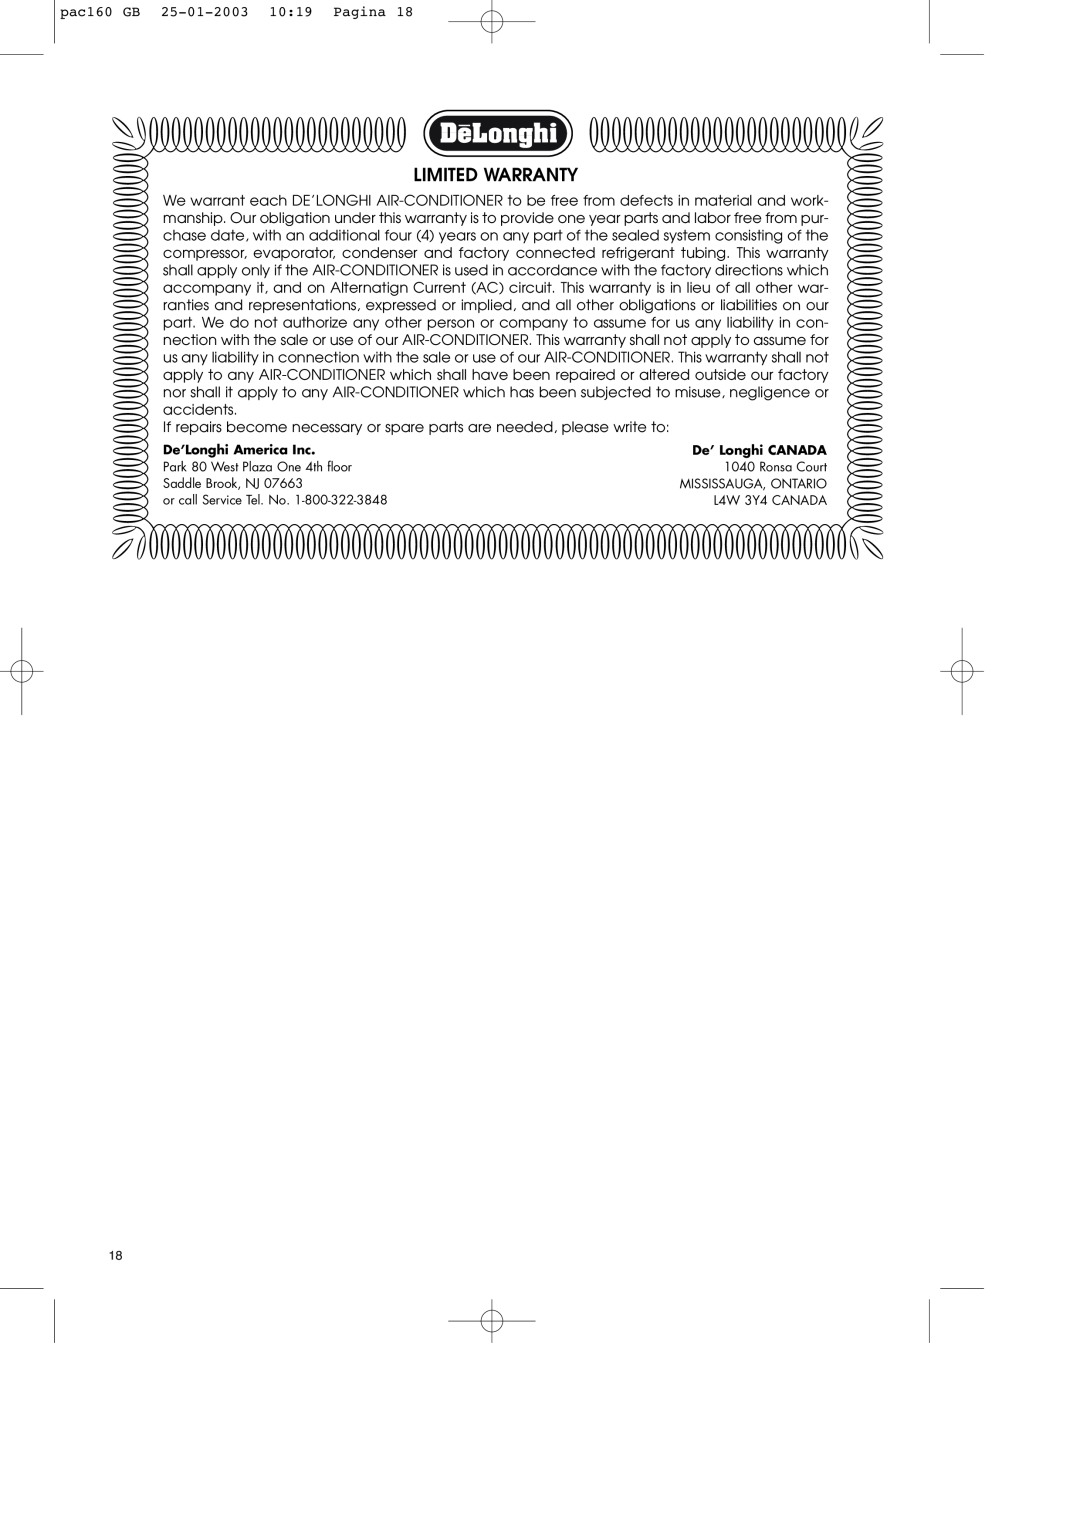 DeLonghi PAC160 manual Limited Warranty, De’Longhi America Inc, De’ Longhi CANADA 